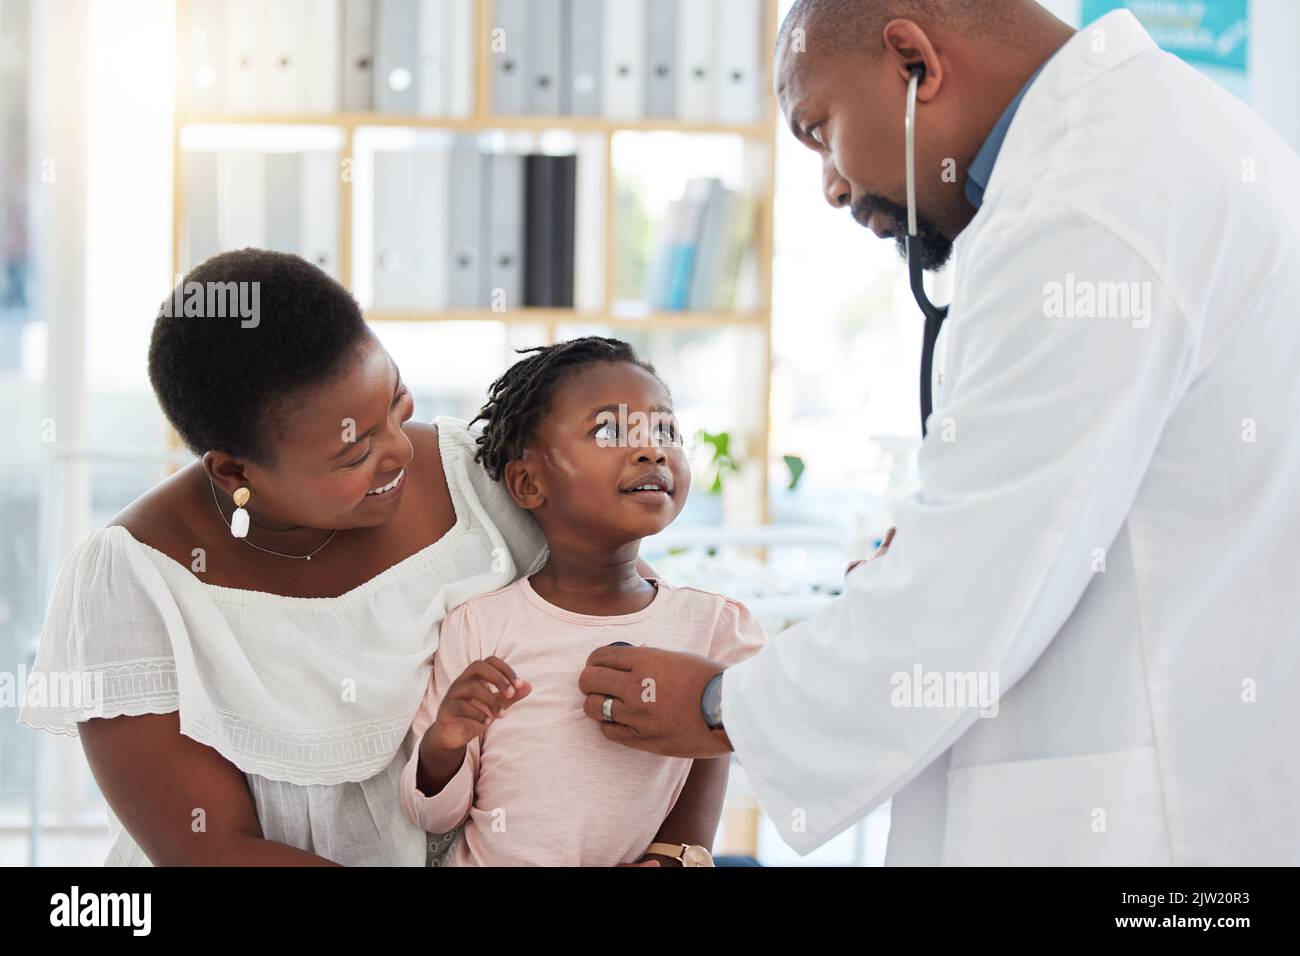 Médecin de coeur, mère et enfant à l'hôpital pour un examen ou un conseil médical à une clinique. Homme de santé noir en cardiologie Banque D'Images